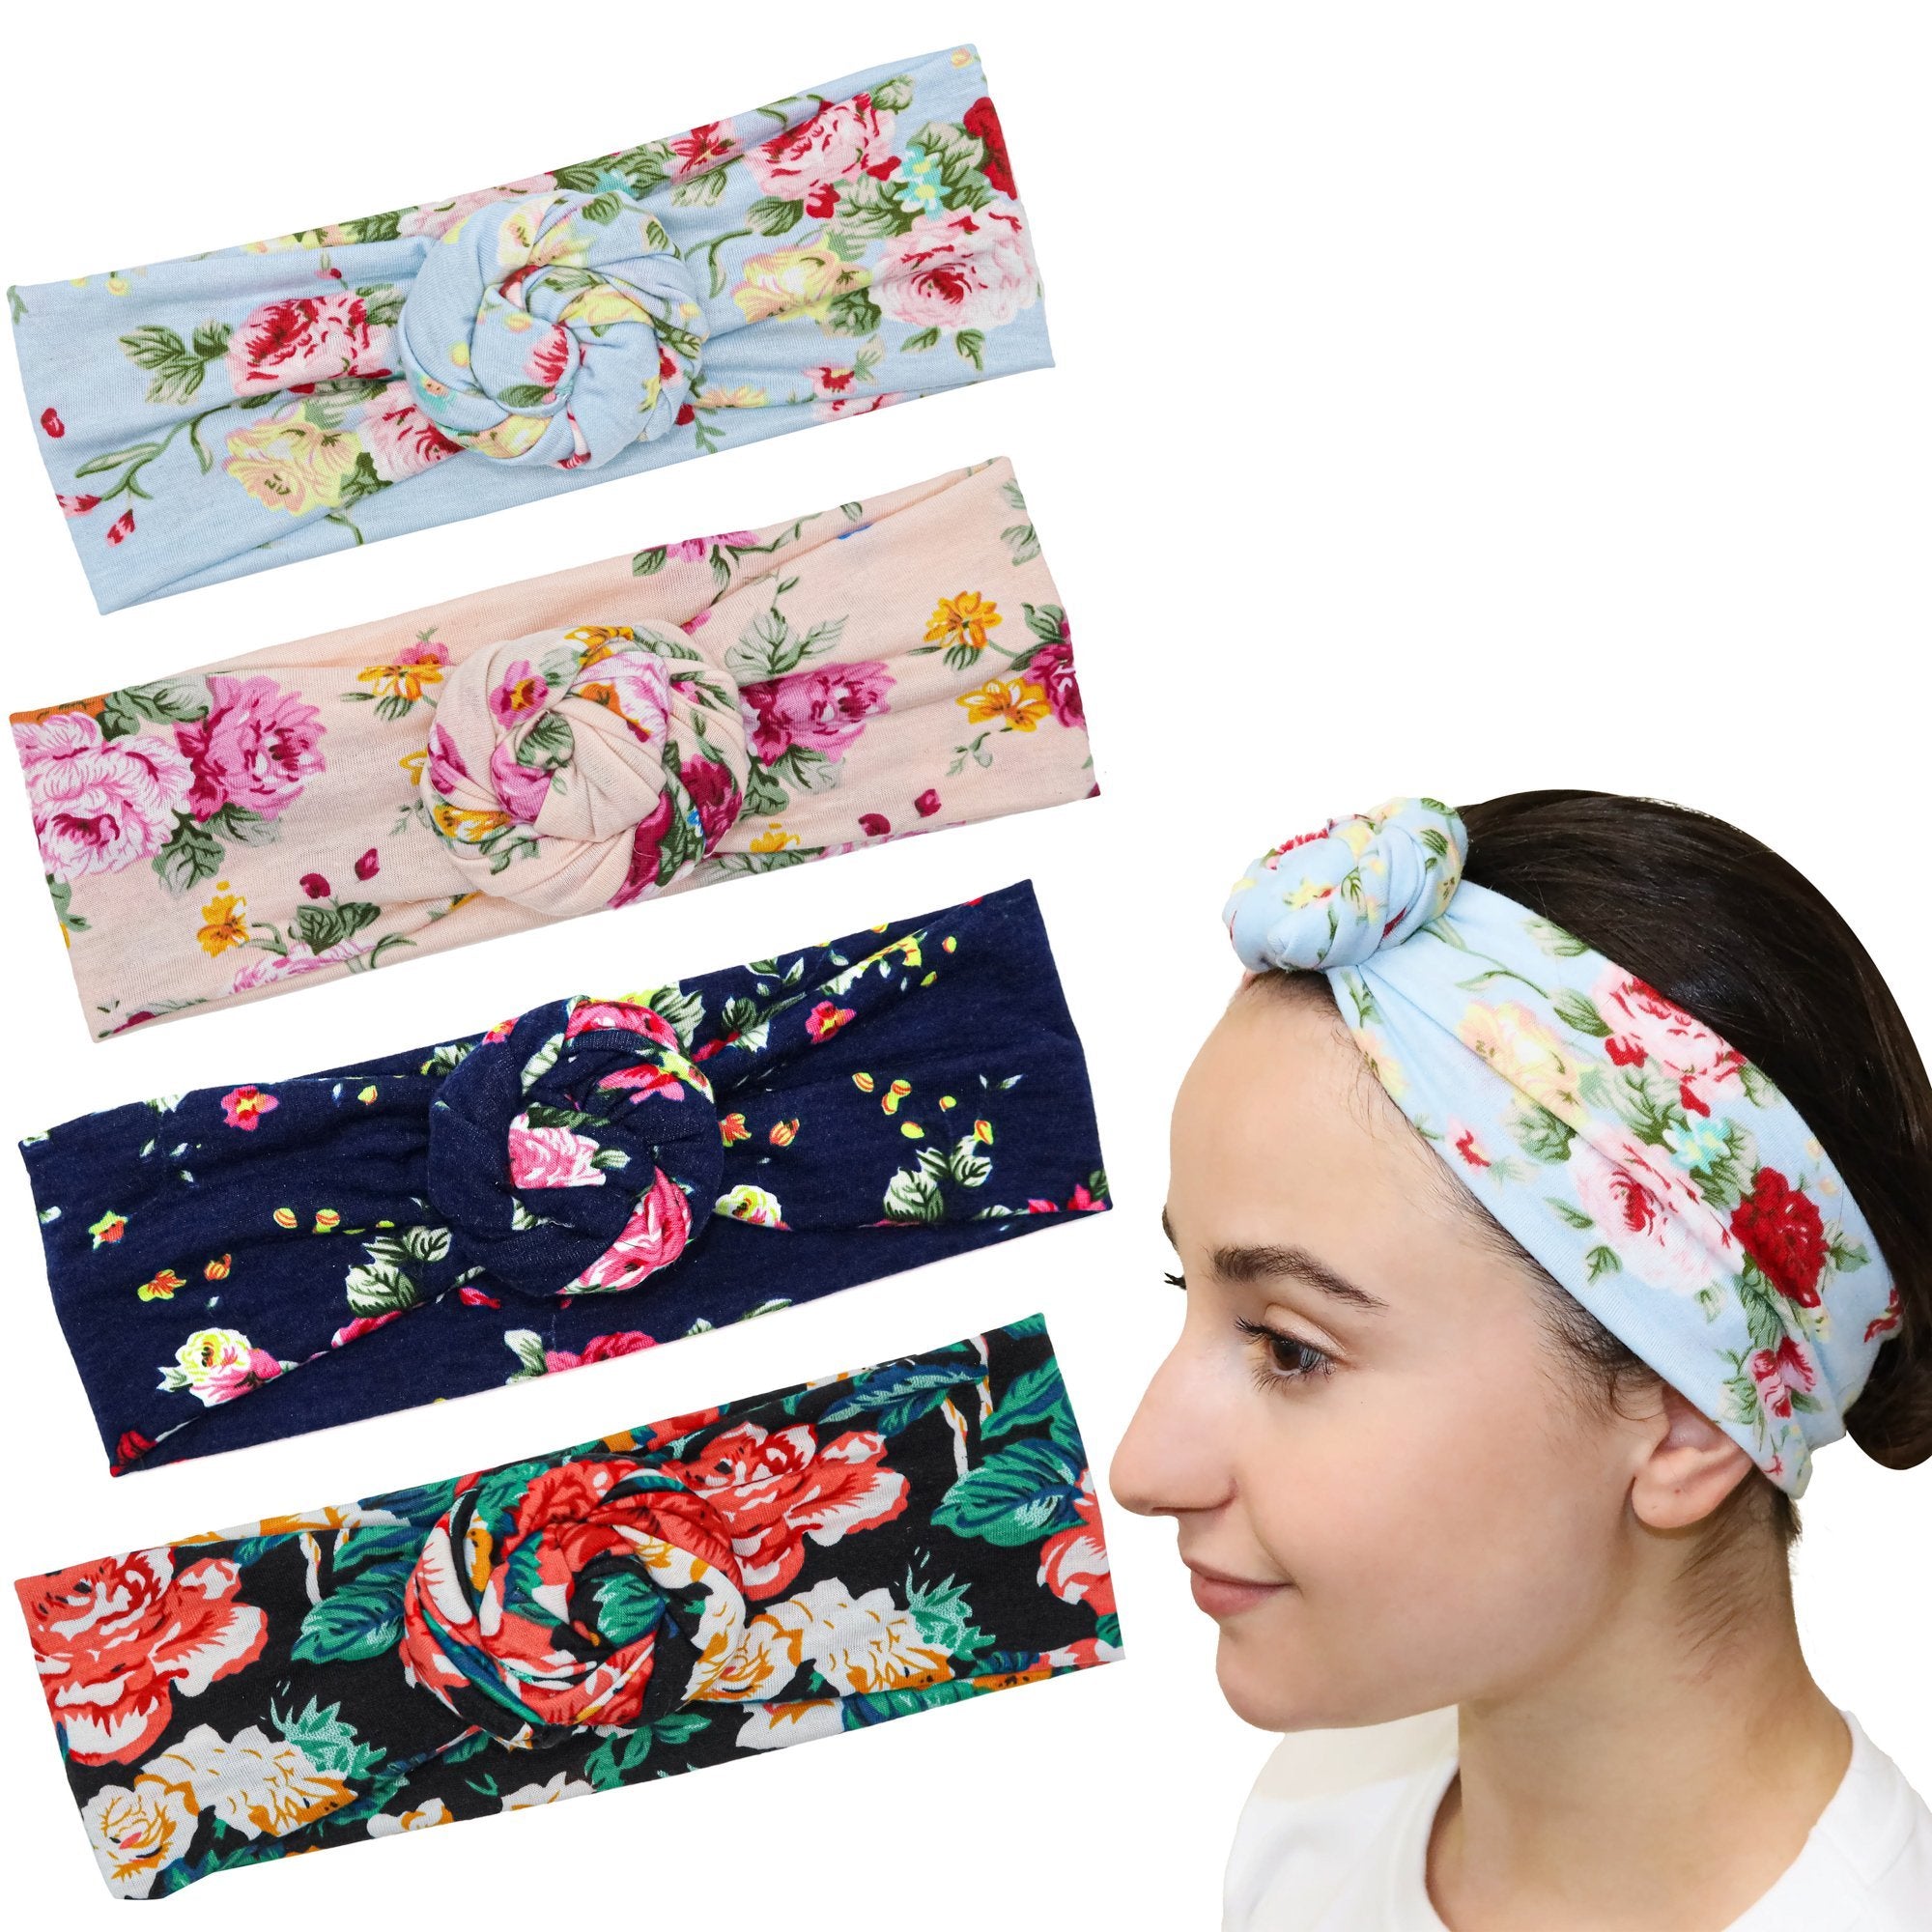 Soft Stretch Floral Rosebud Headbands - 4 Pack